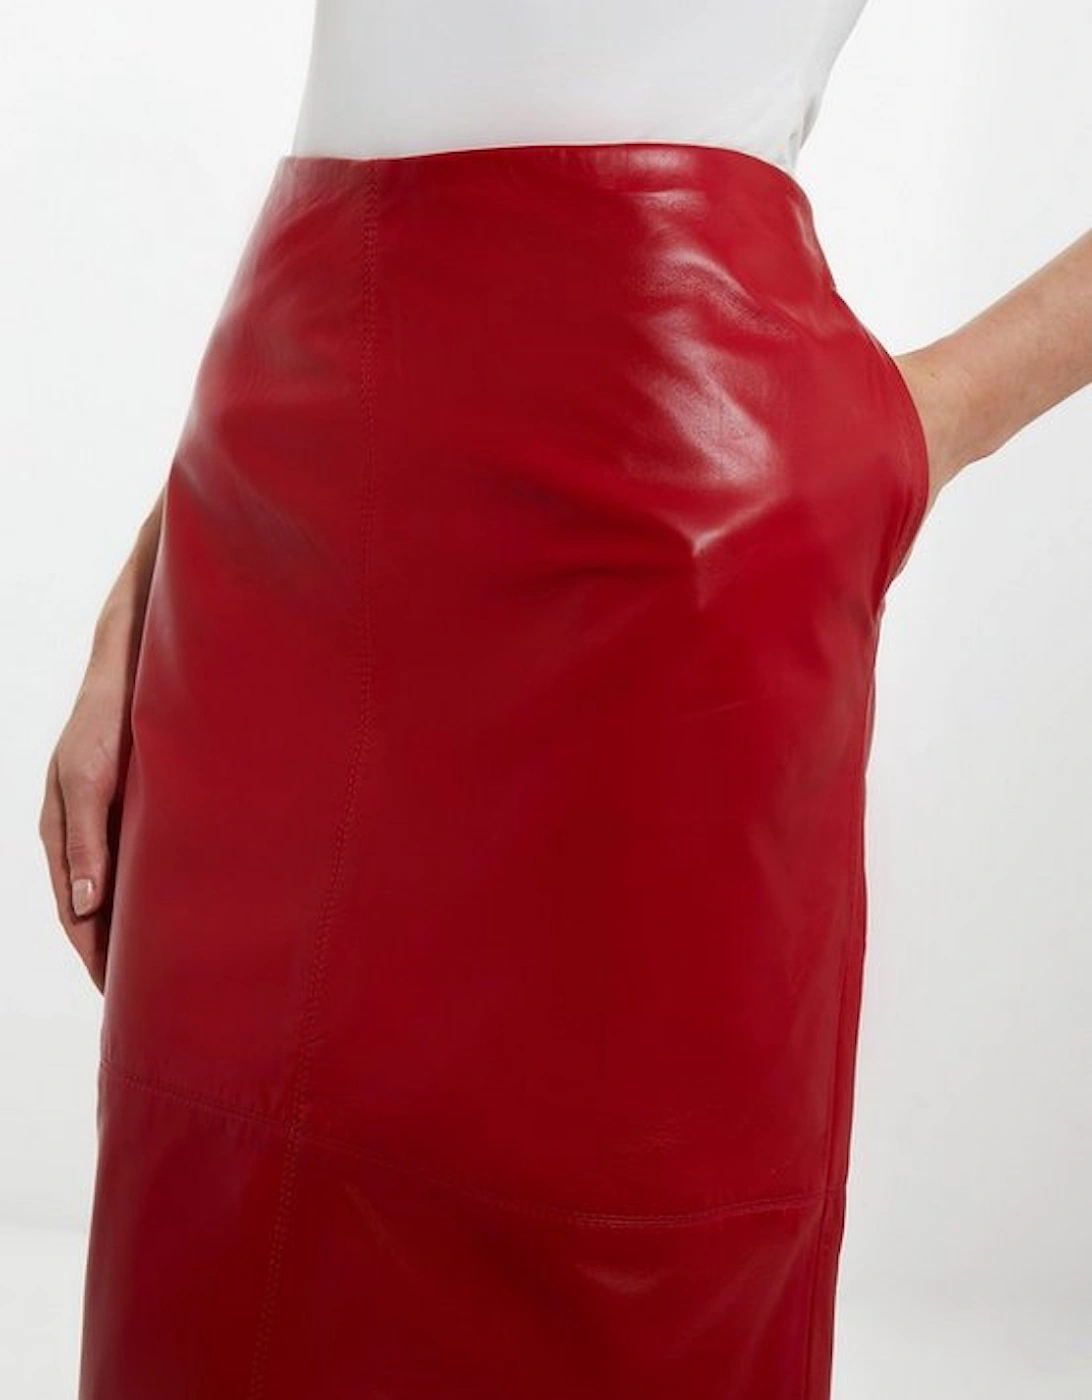 Leather Panel Pencil Midi Skirt